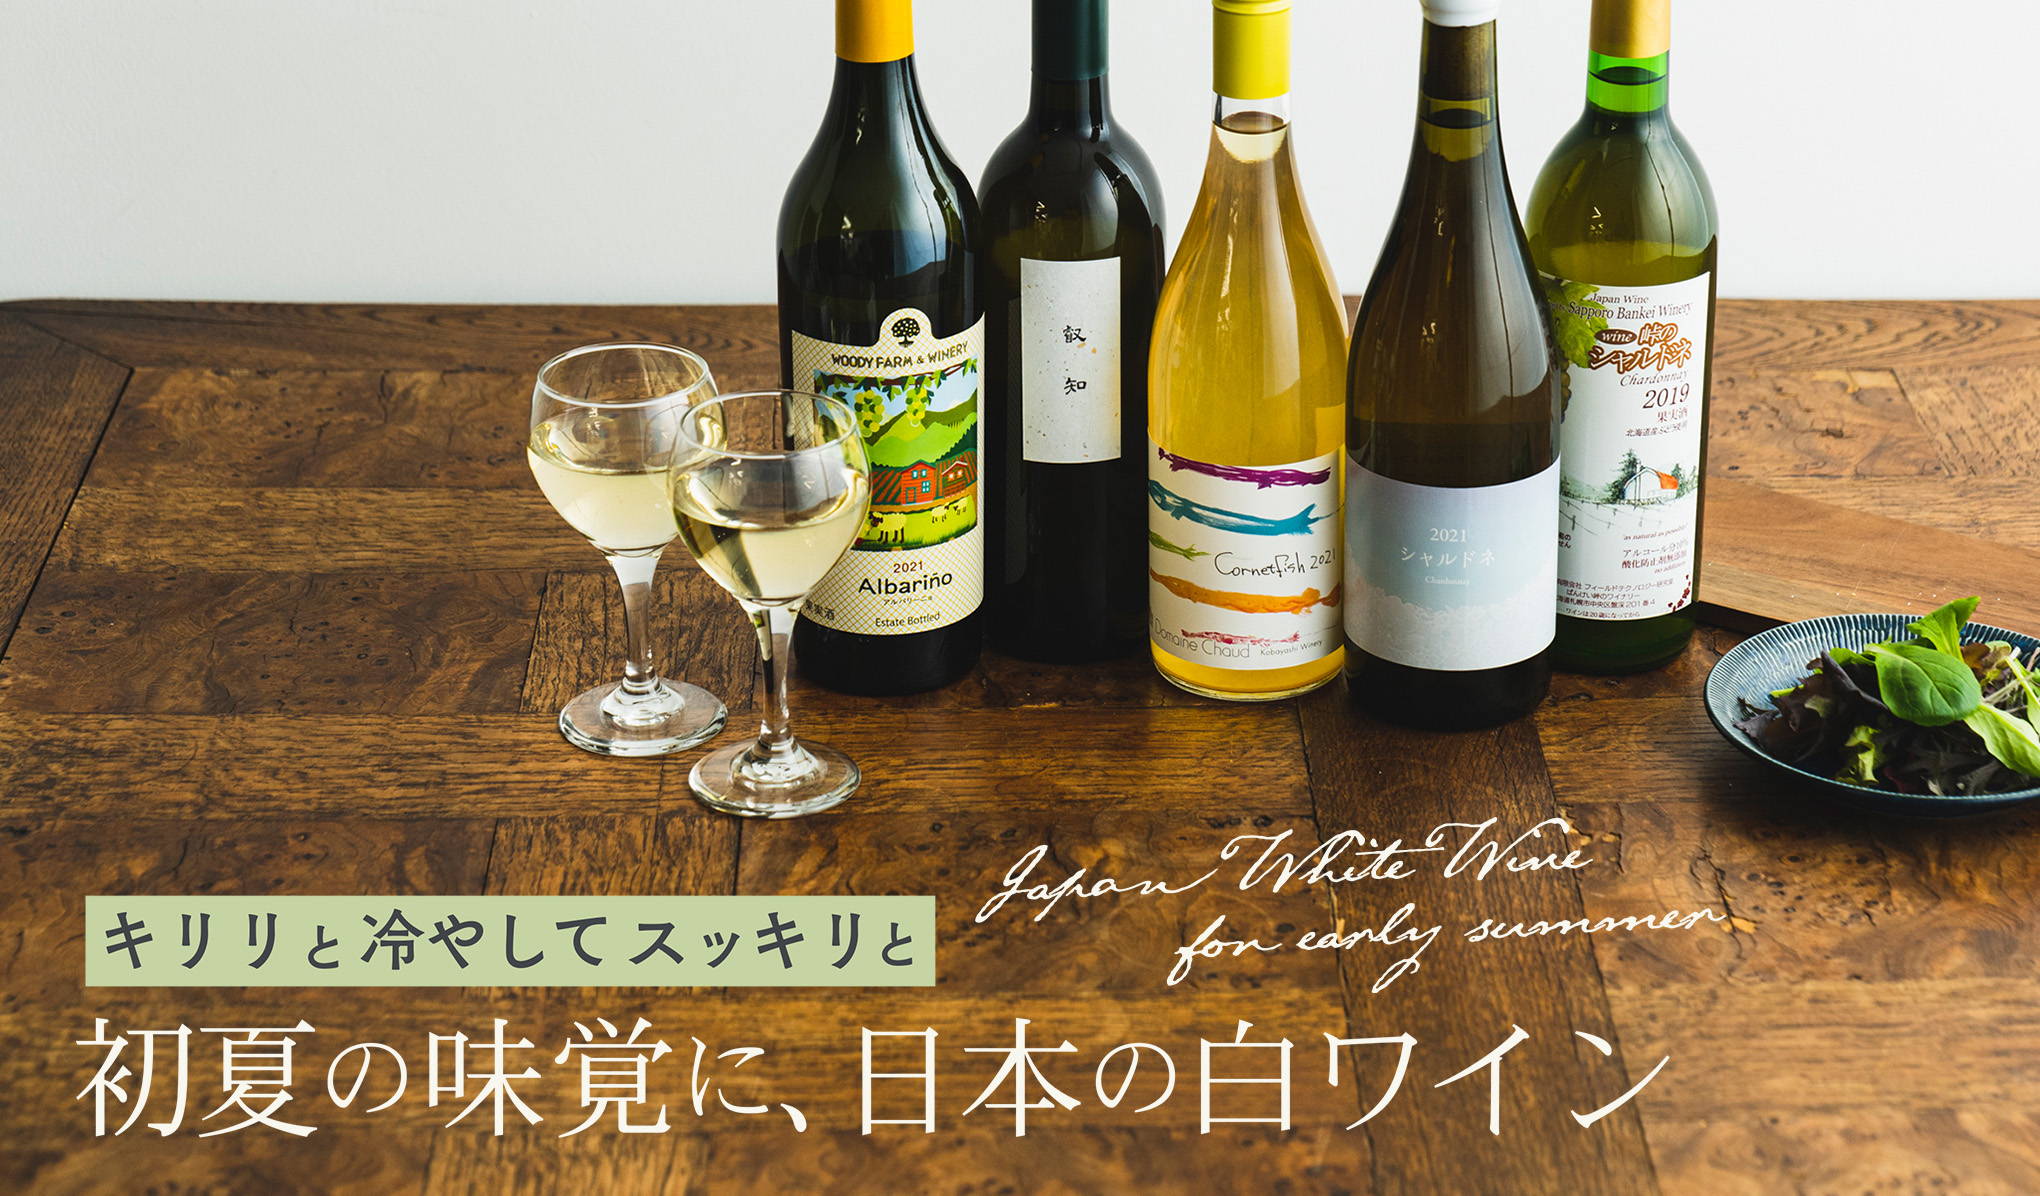 キリリと冷やしてスッキリと。初夏の味覚に、日本の白ワイン